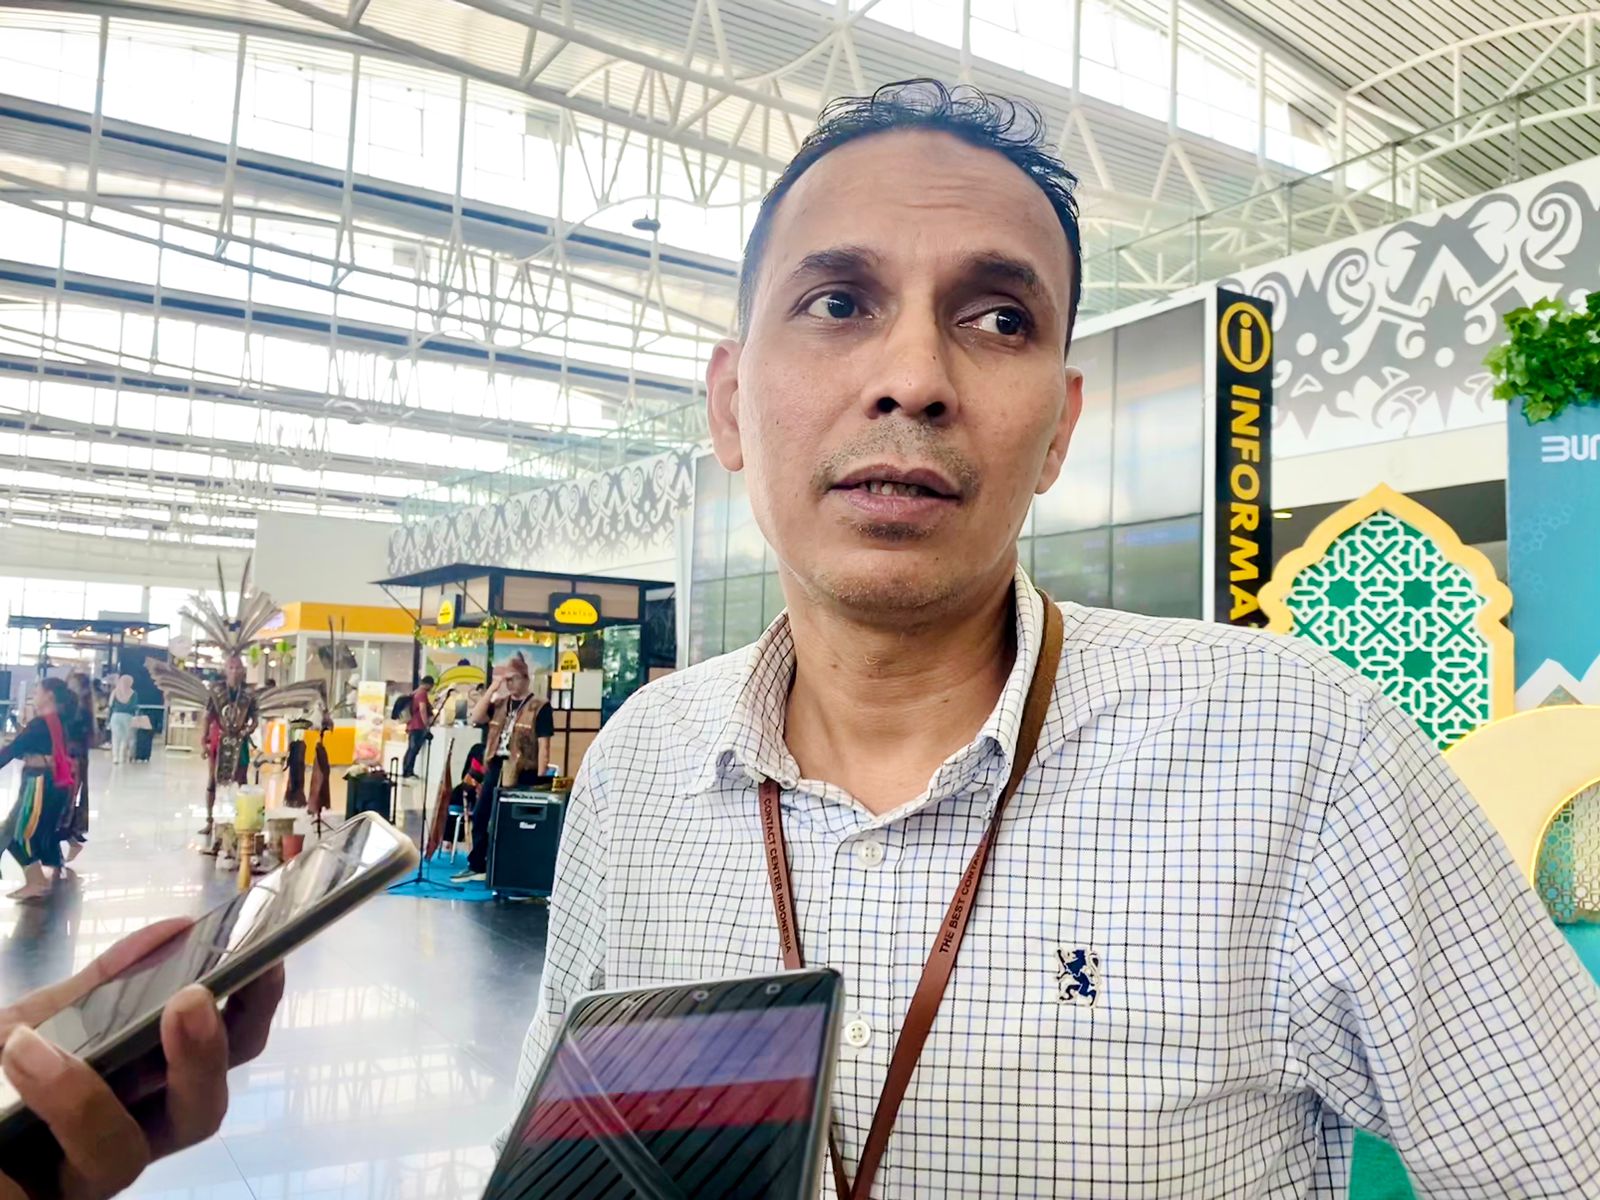 Pemudik Capai 21 Ribu dalam Sehari, Bandara SAMS Sepinggan Balikpapan Catat Rekor Terpadat